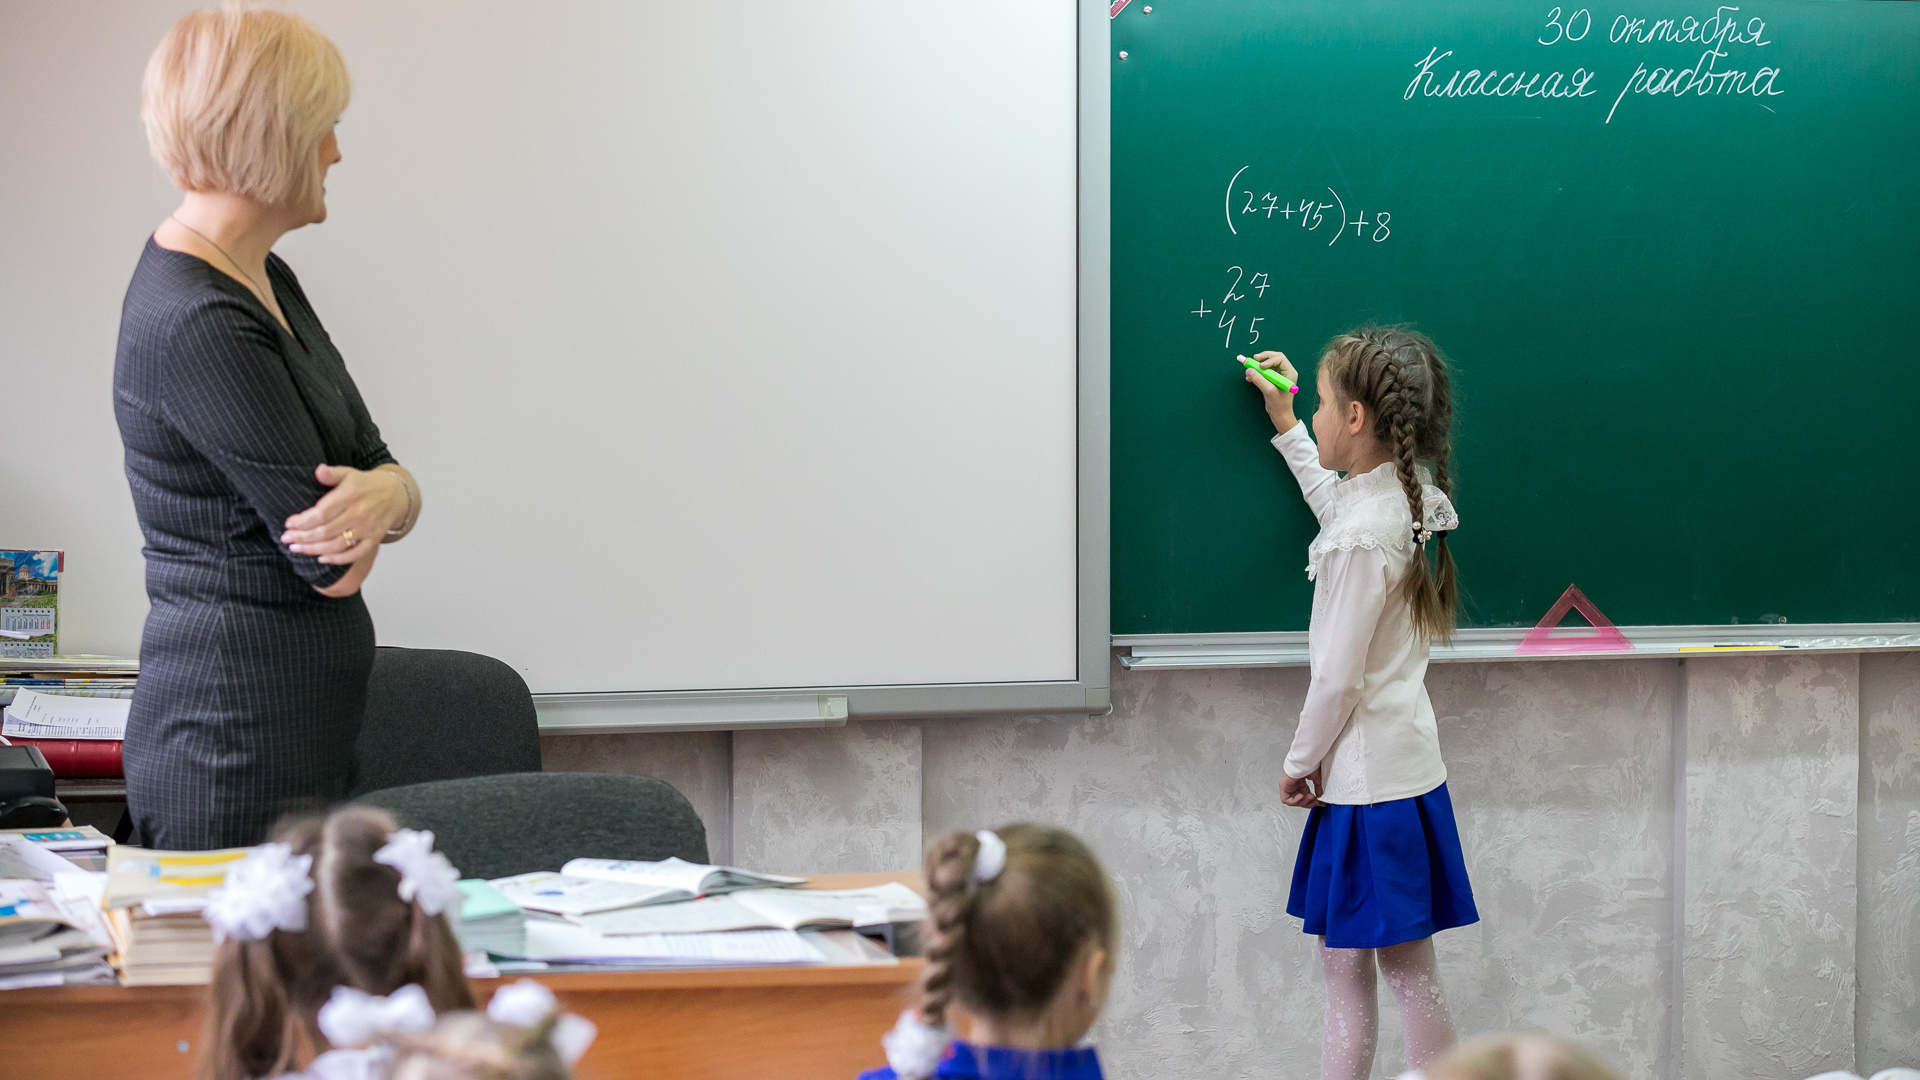 «Бесит физкультура»: красноярцы резко высказались о порядках в школах. Что их не устраивает?